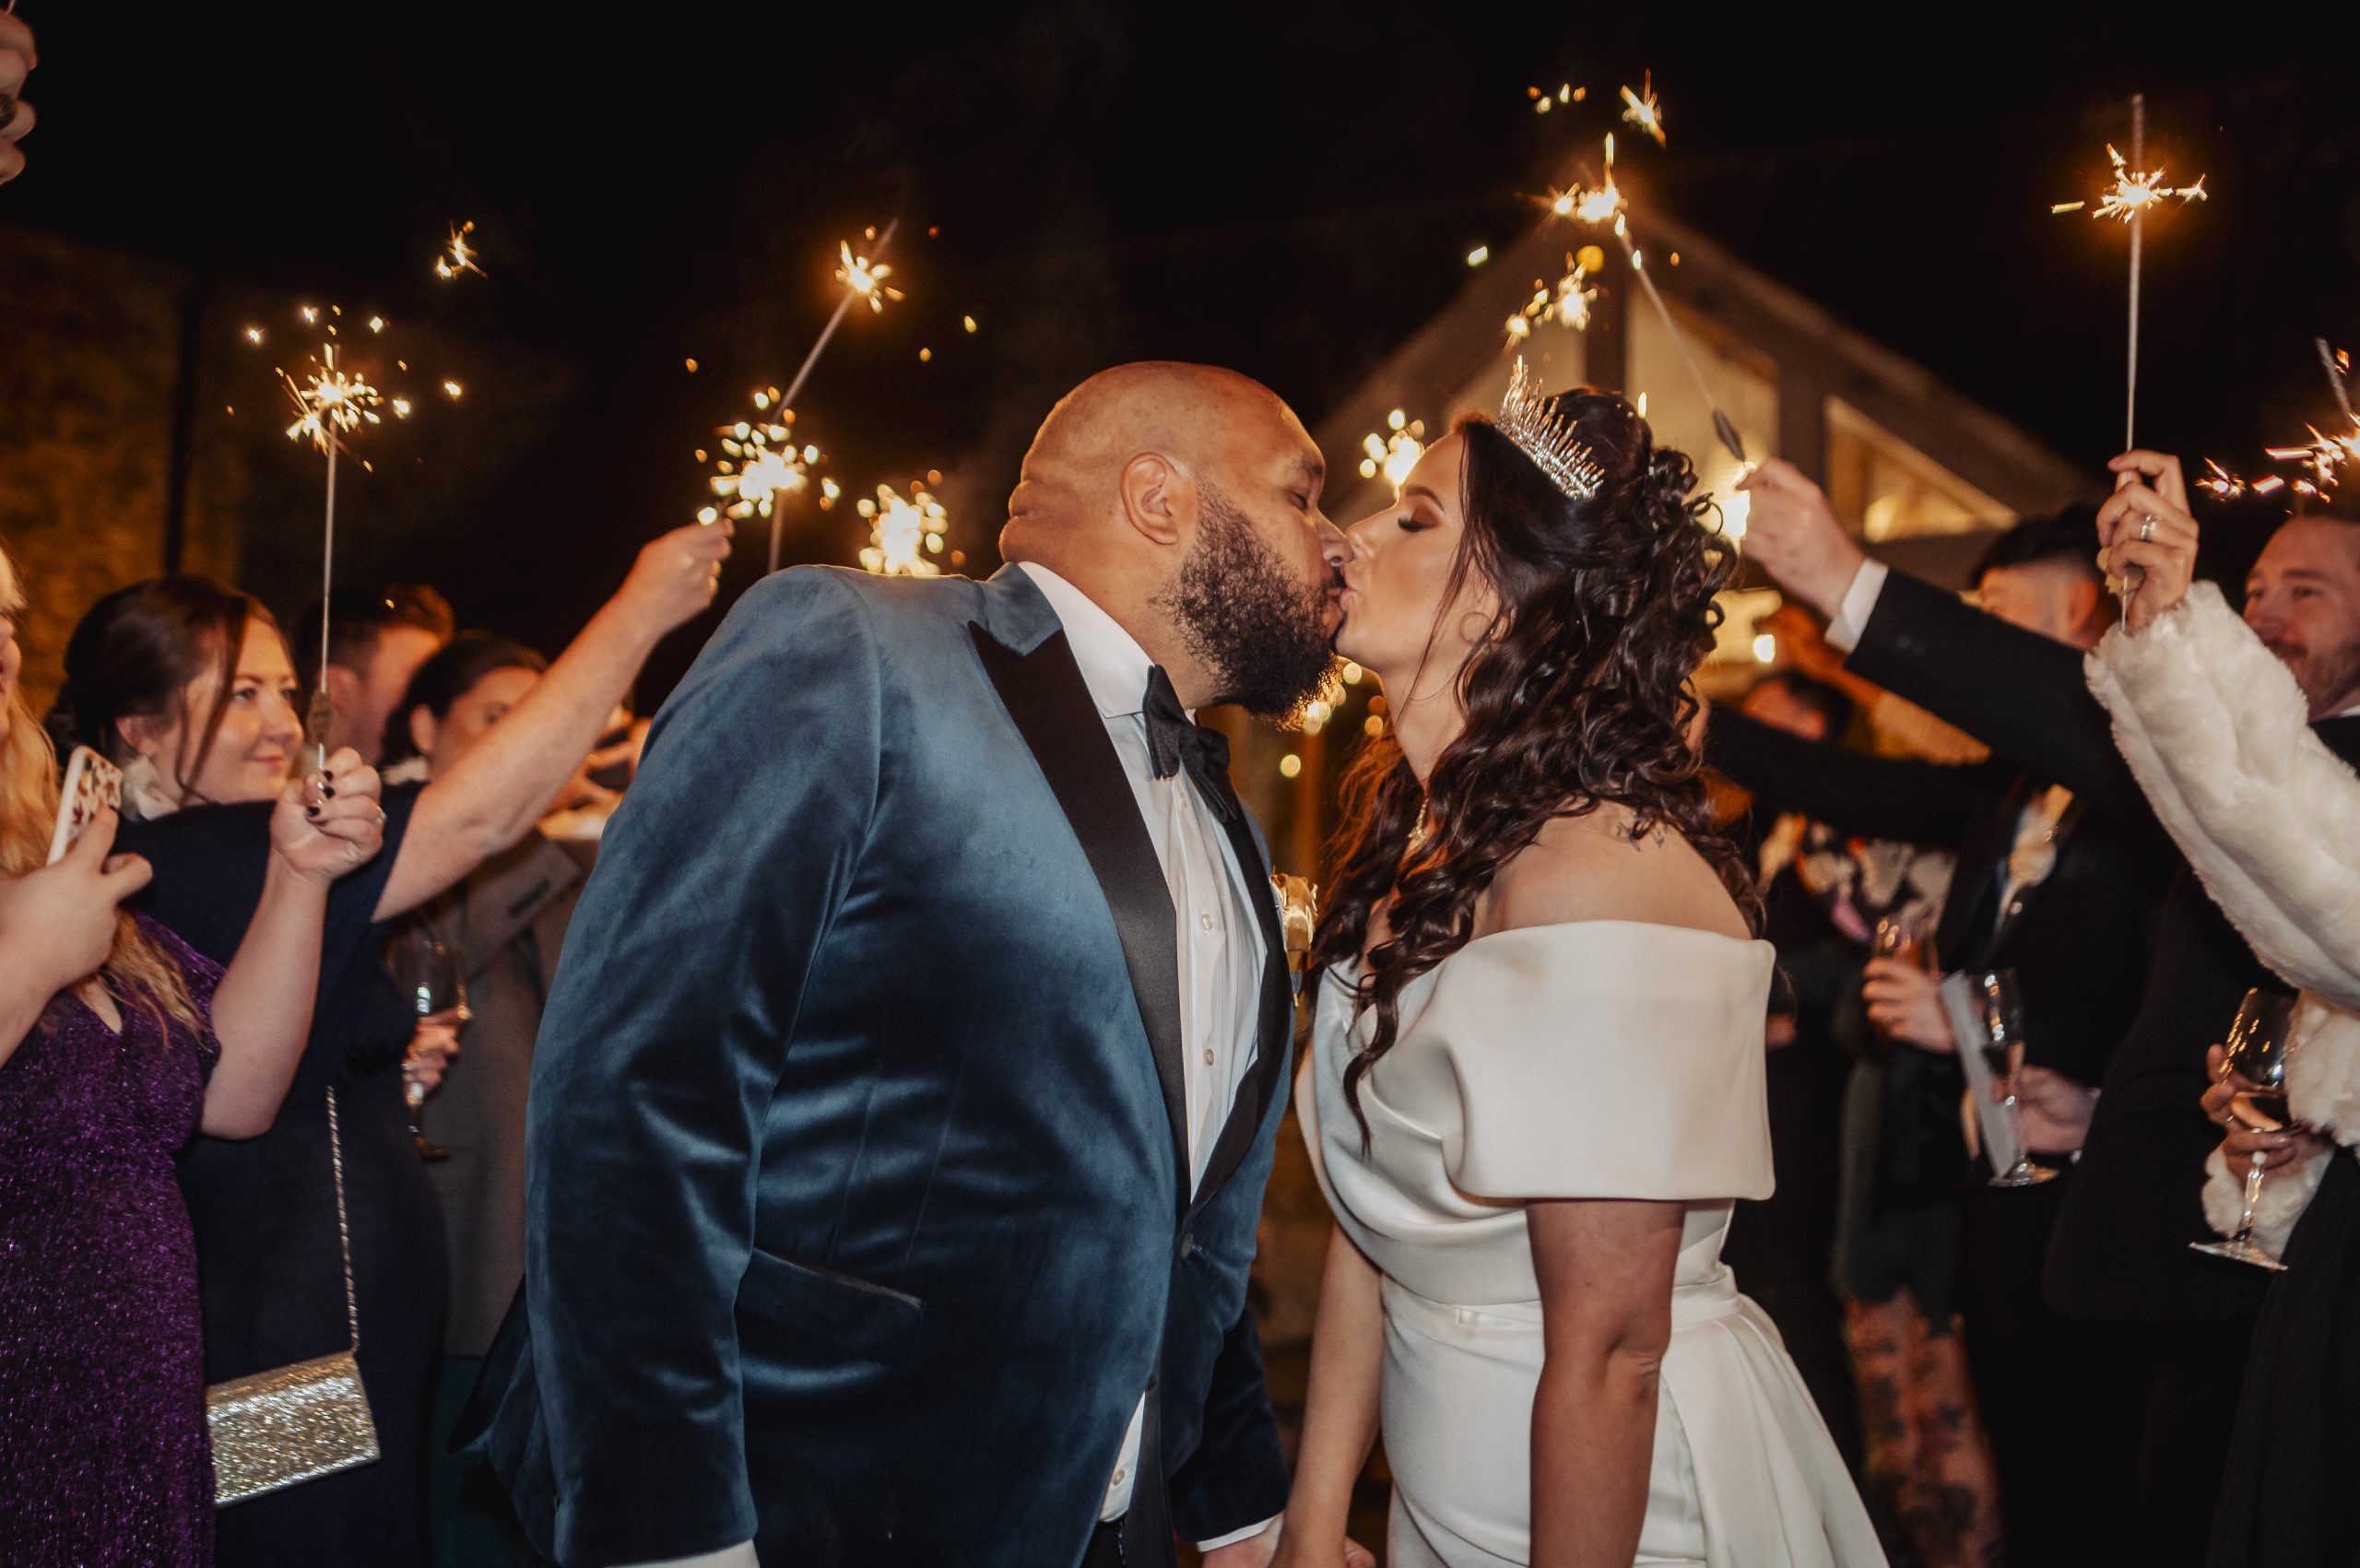 Bride & groom kissing under sparklers